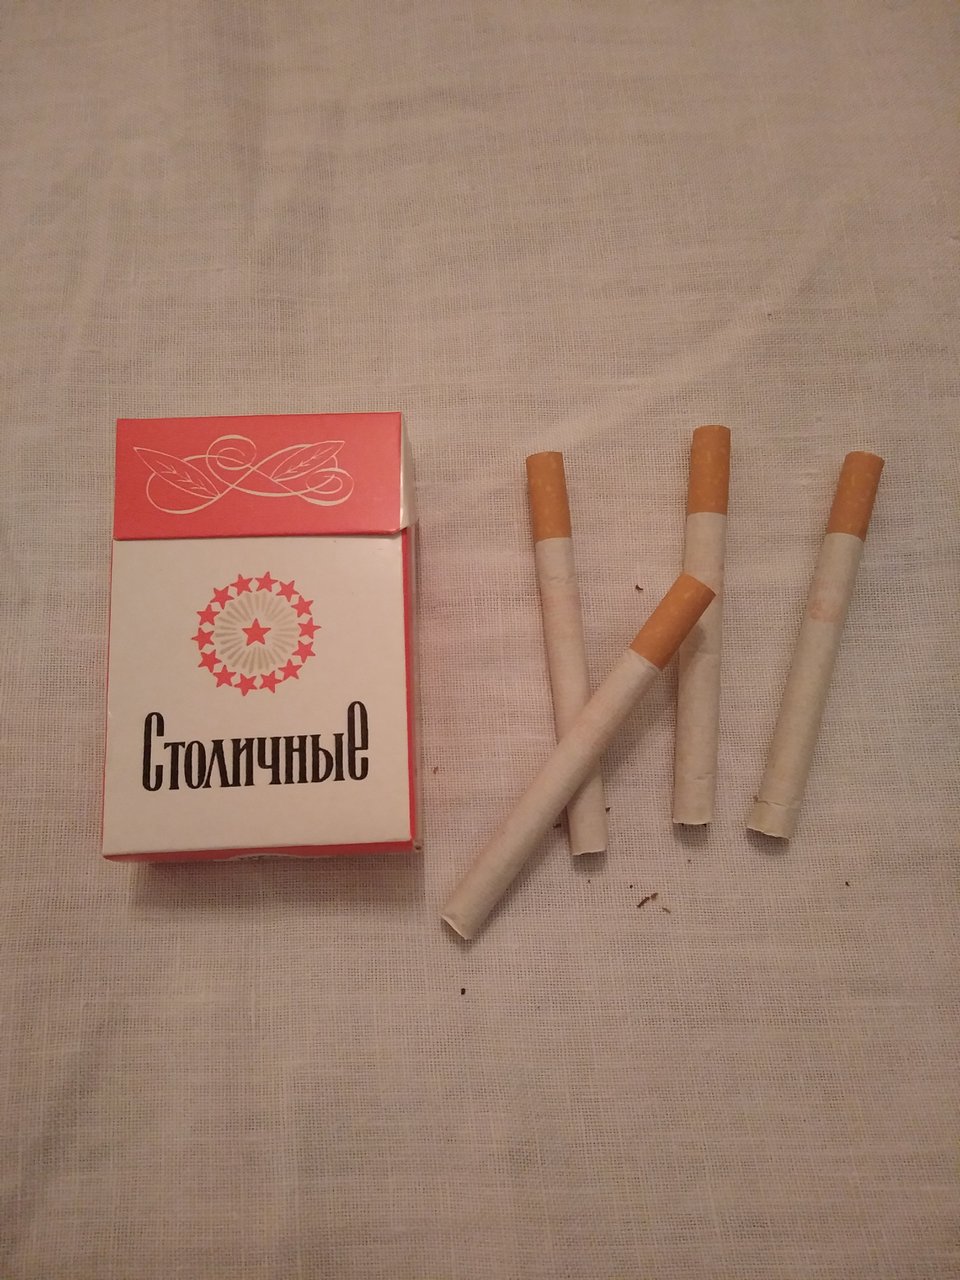 papierosy stolicznyje 4.jpg